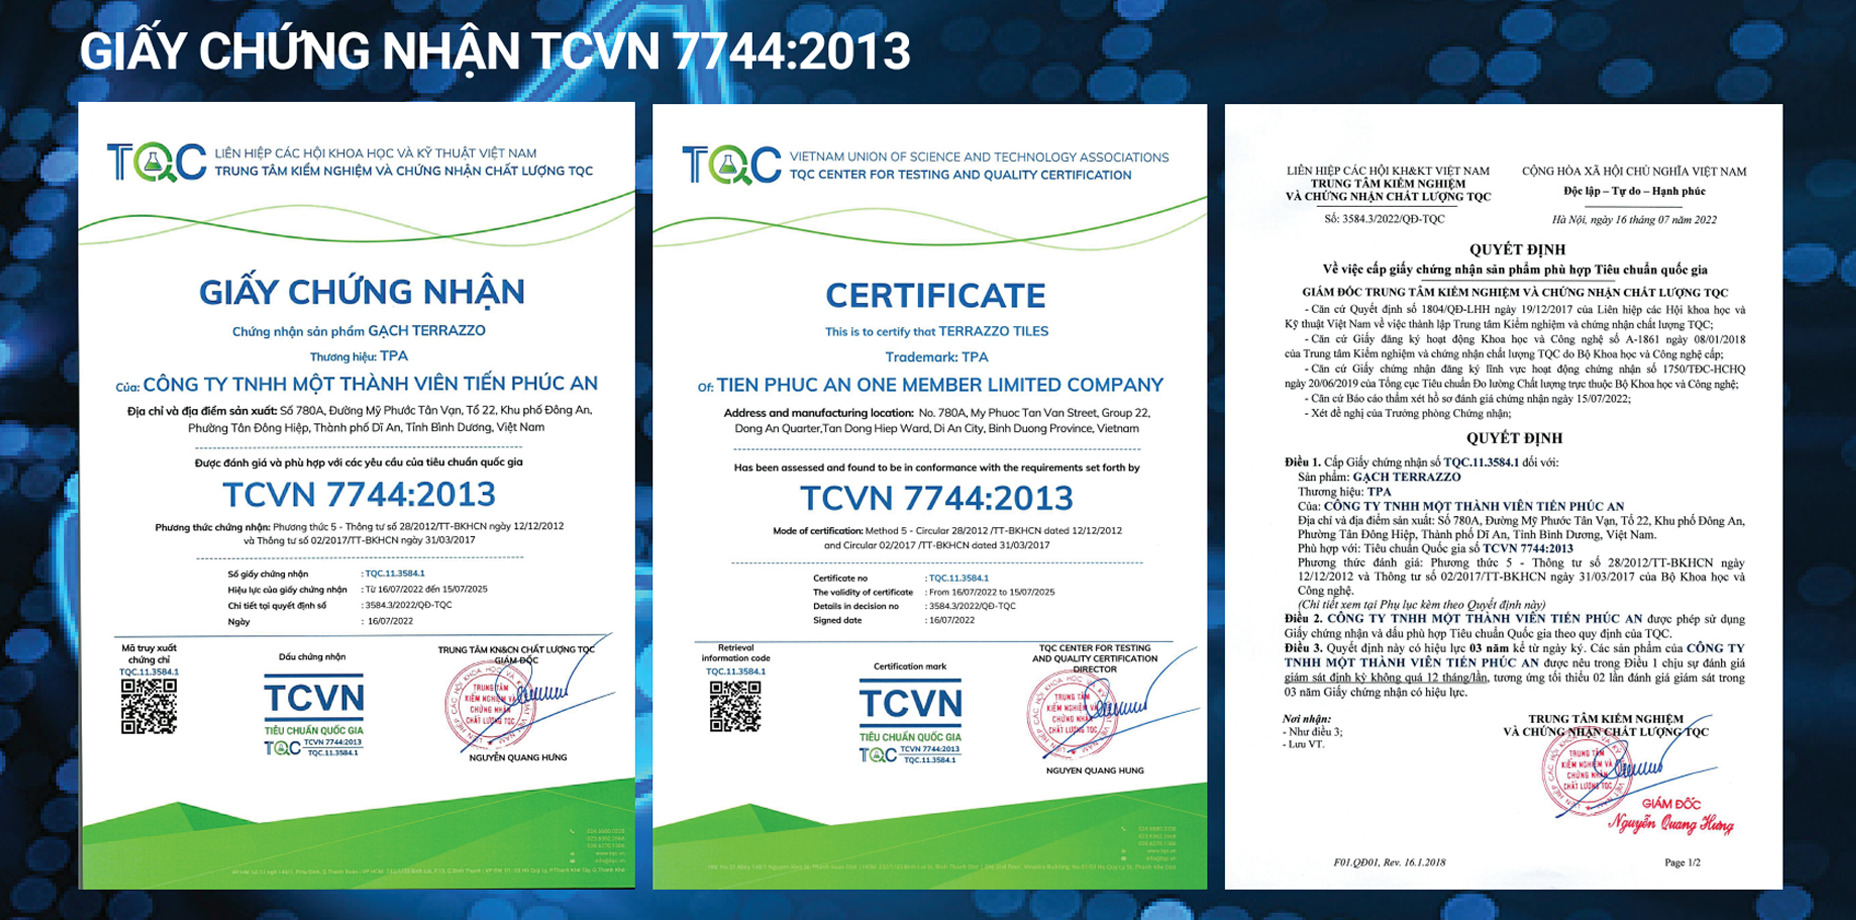 Giấy chứng nhận TCVN 7744:2013